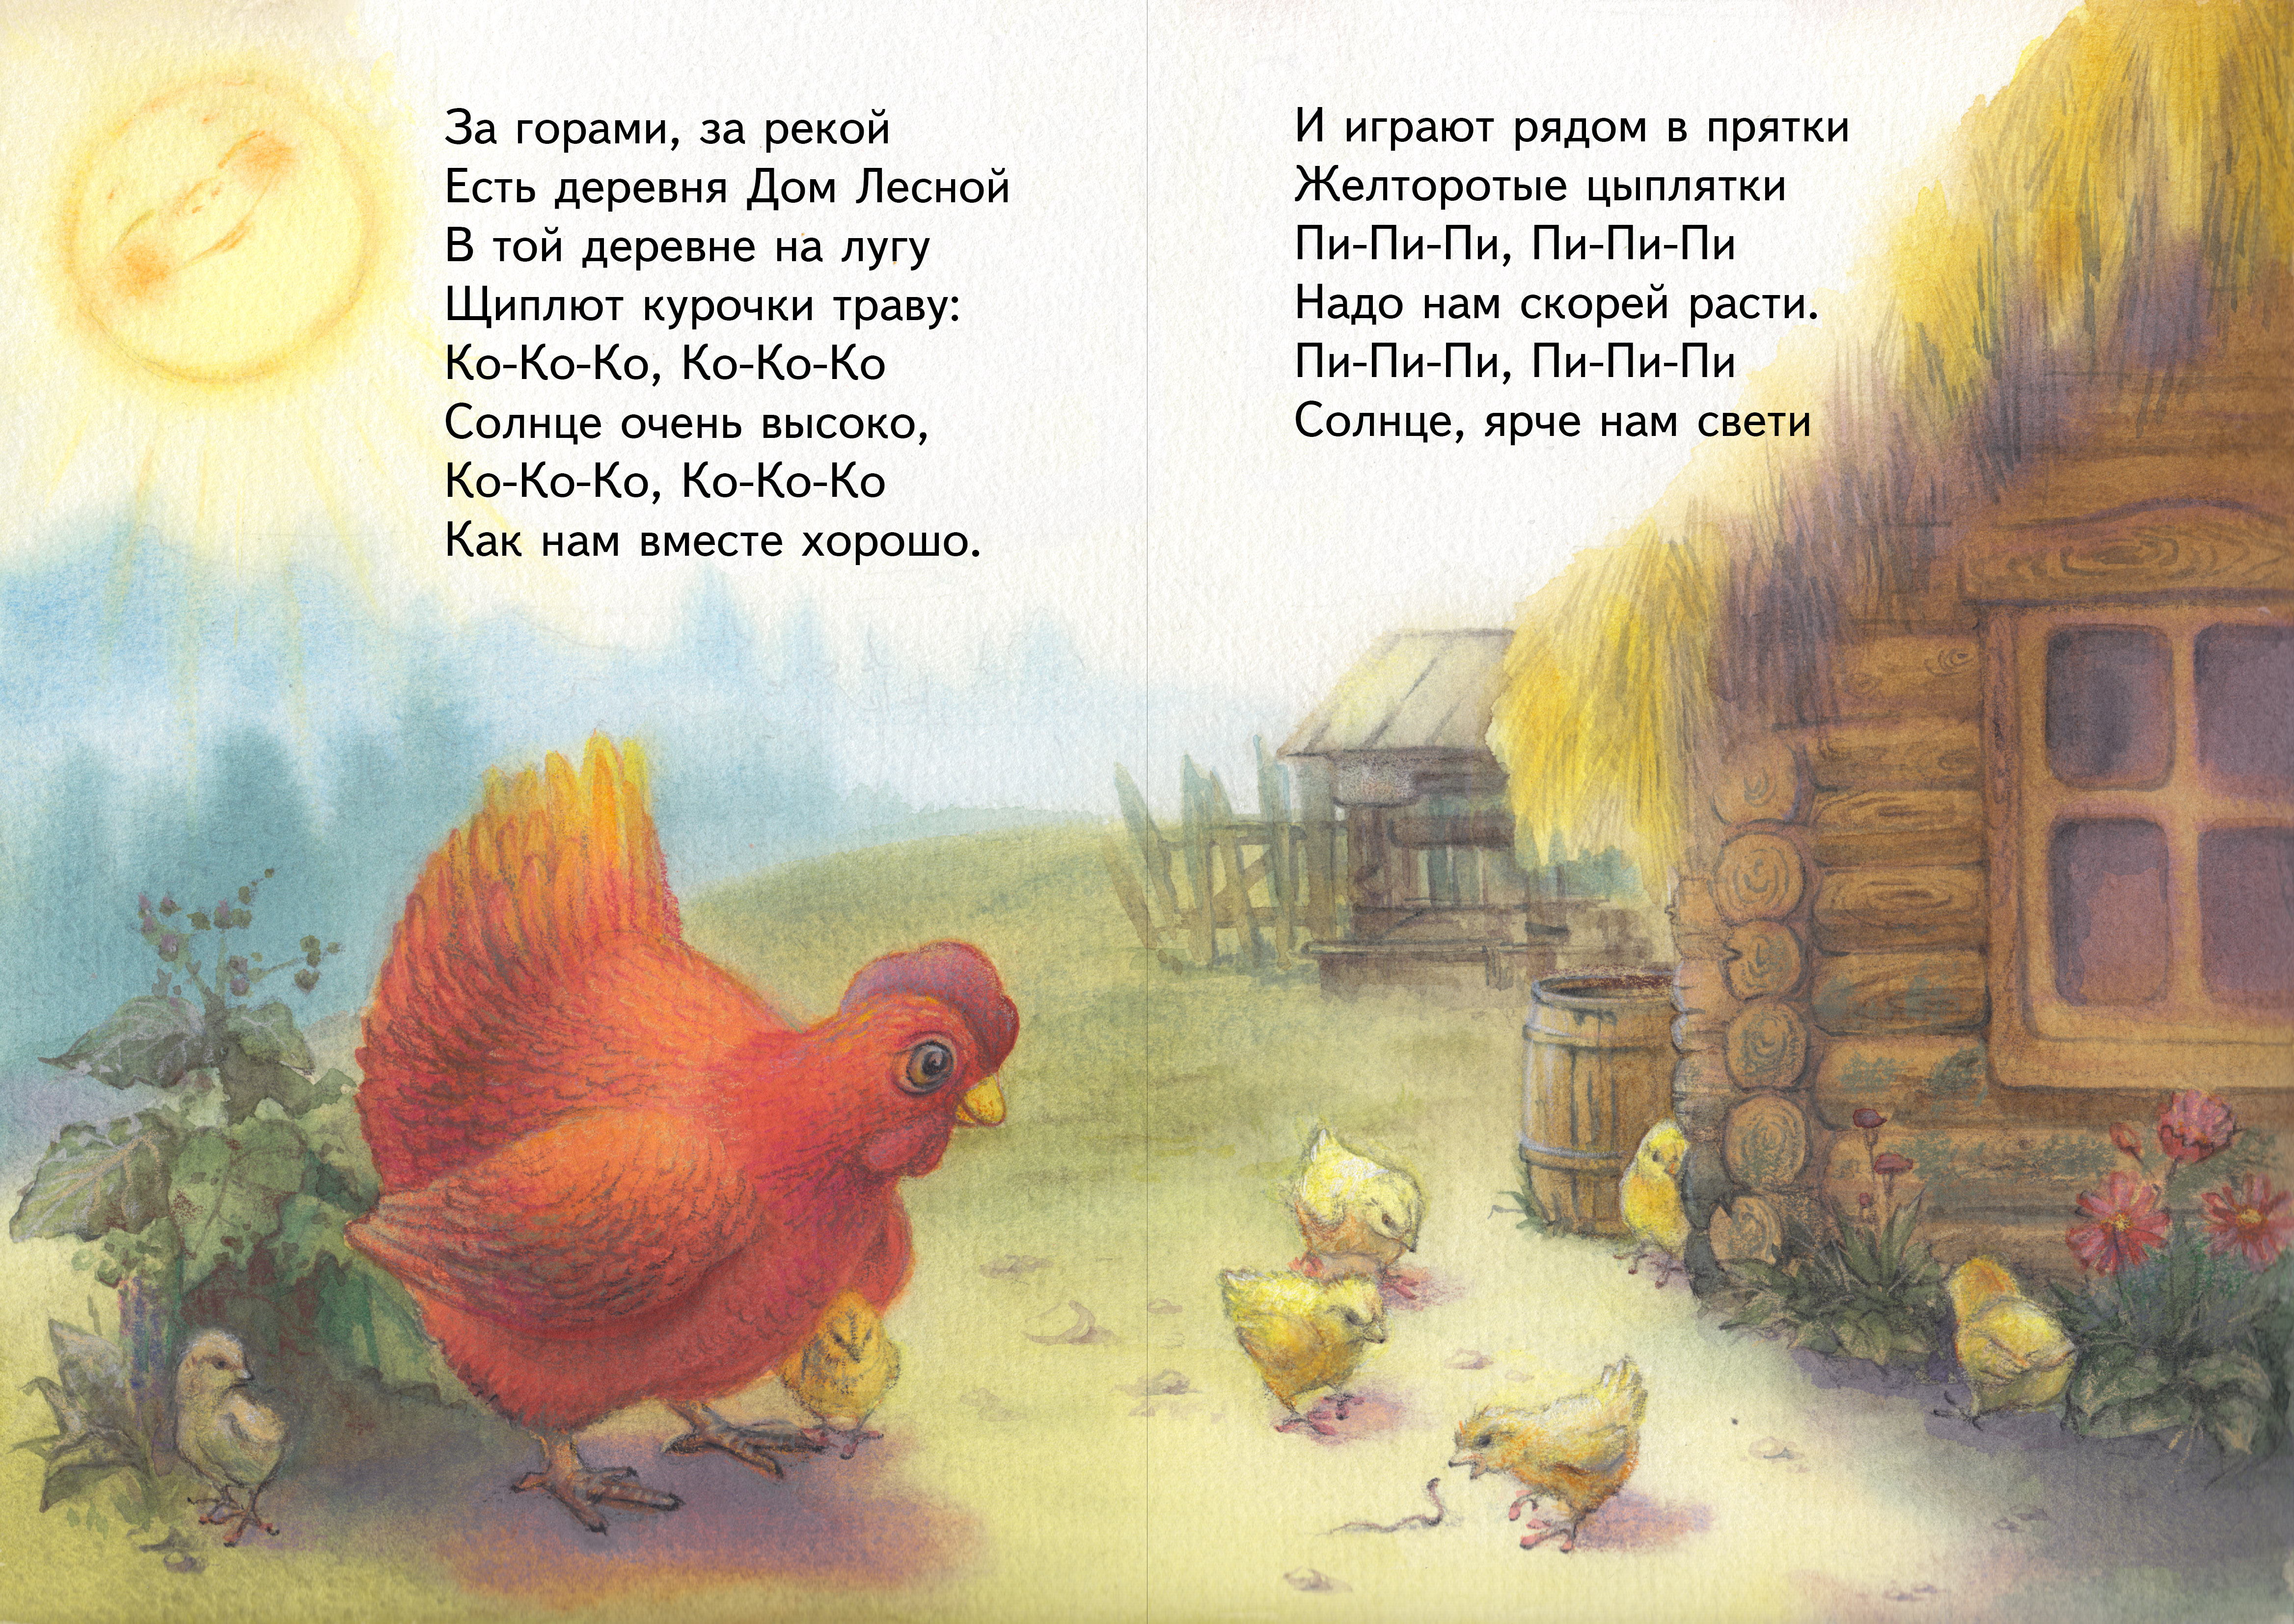 Стих про цыпленка. Стих про курицу для детей. Стих про цыпленка для детей. Стих про курочку. Стишок про курочку и цыплят.